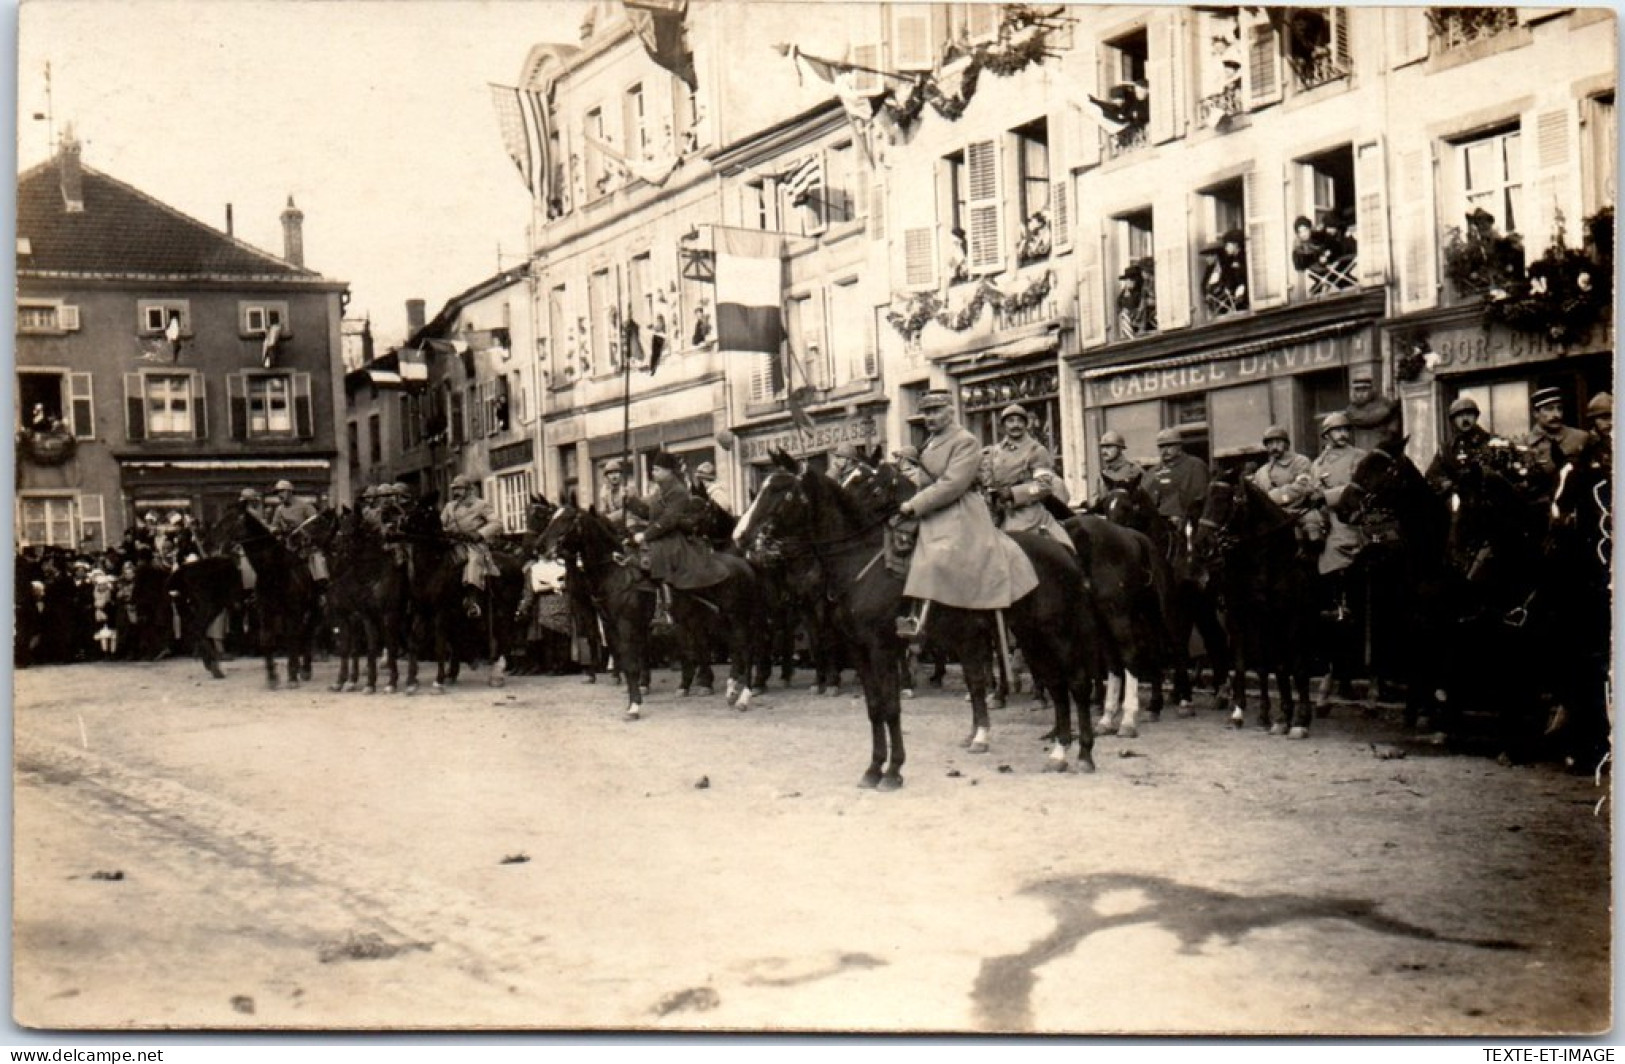 57 MORHANGE - CARTE PHOTO - Officier Sur La Place 1918 - Morhange